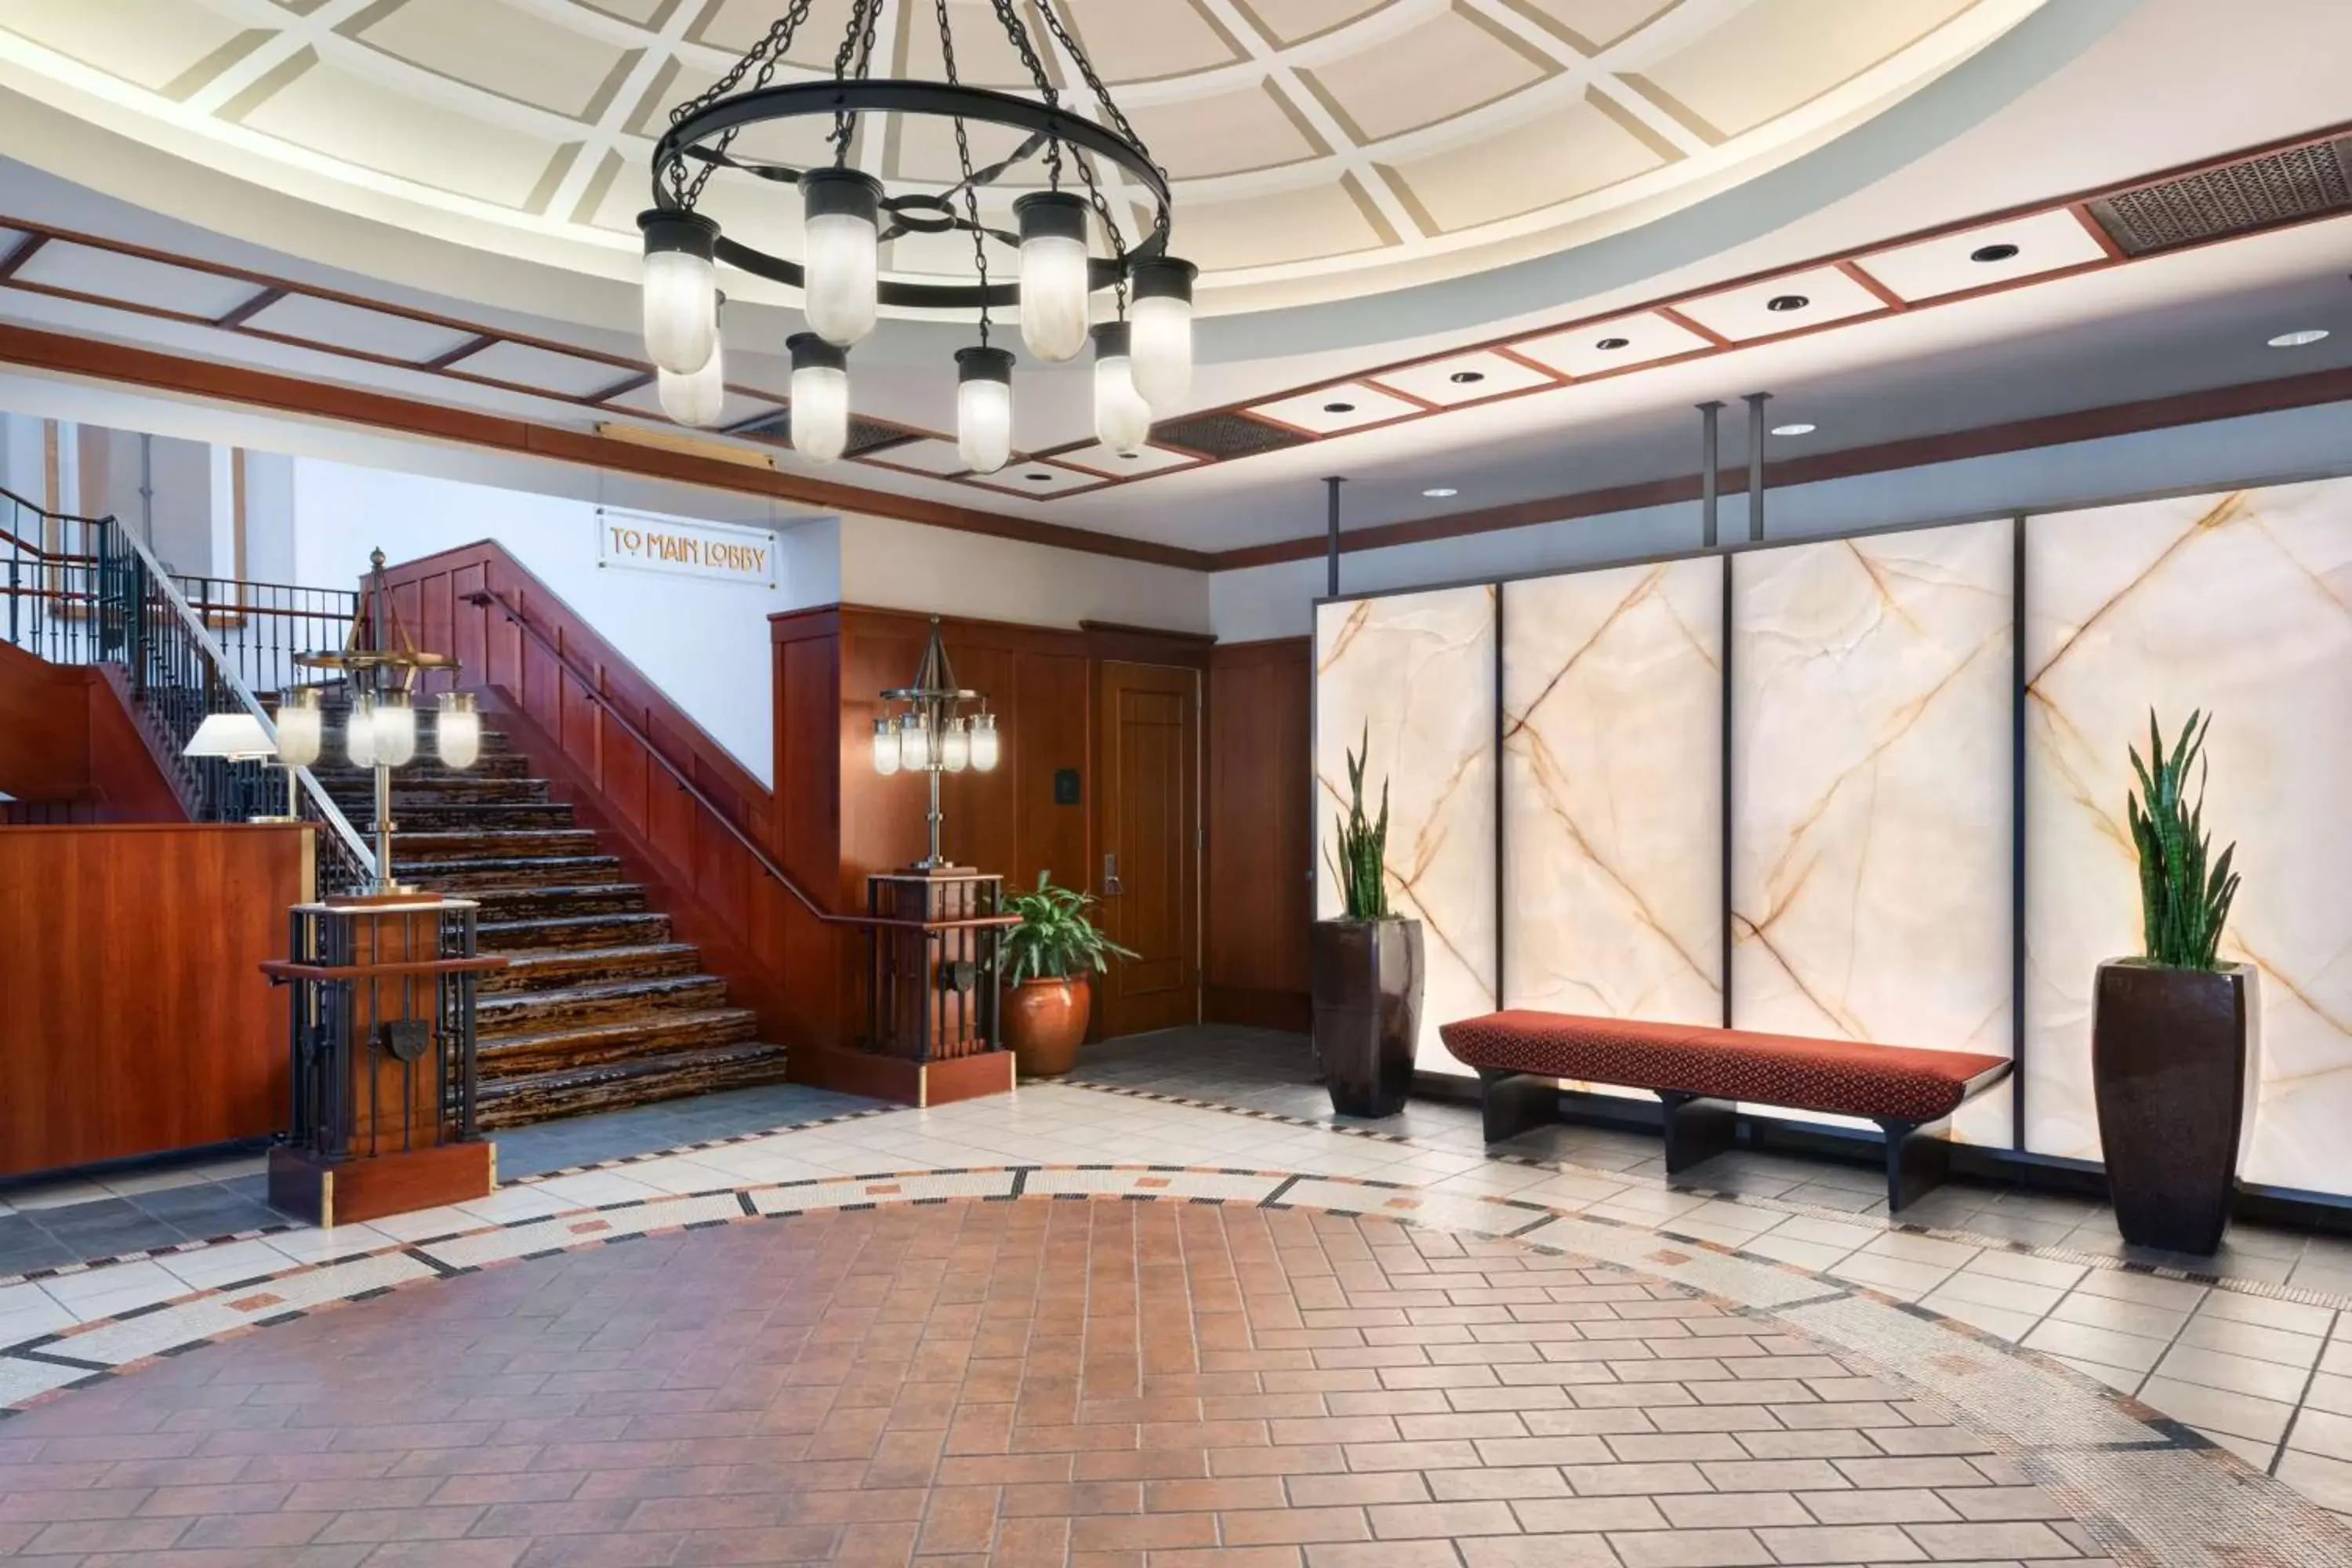 Lobby or reception, Lobby/Reception in The Inn at Penn, A Hilton Hotel